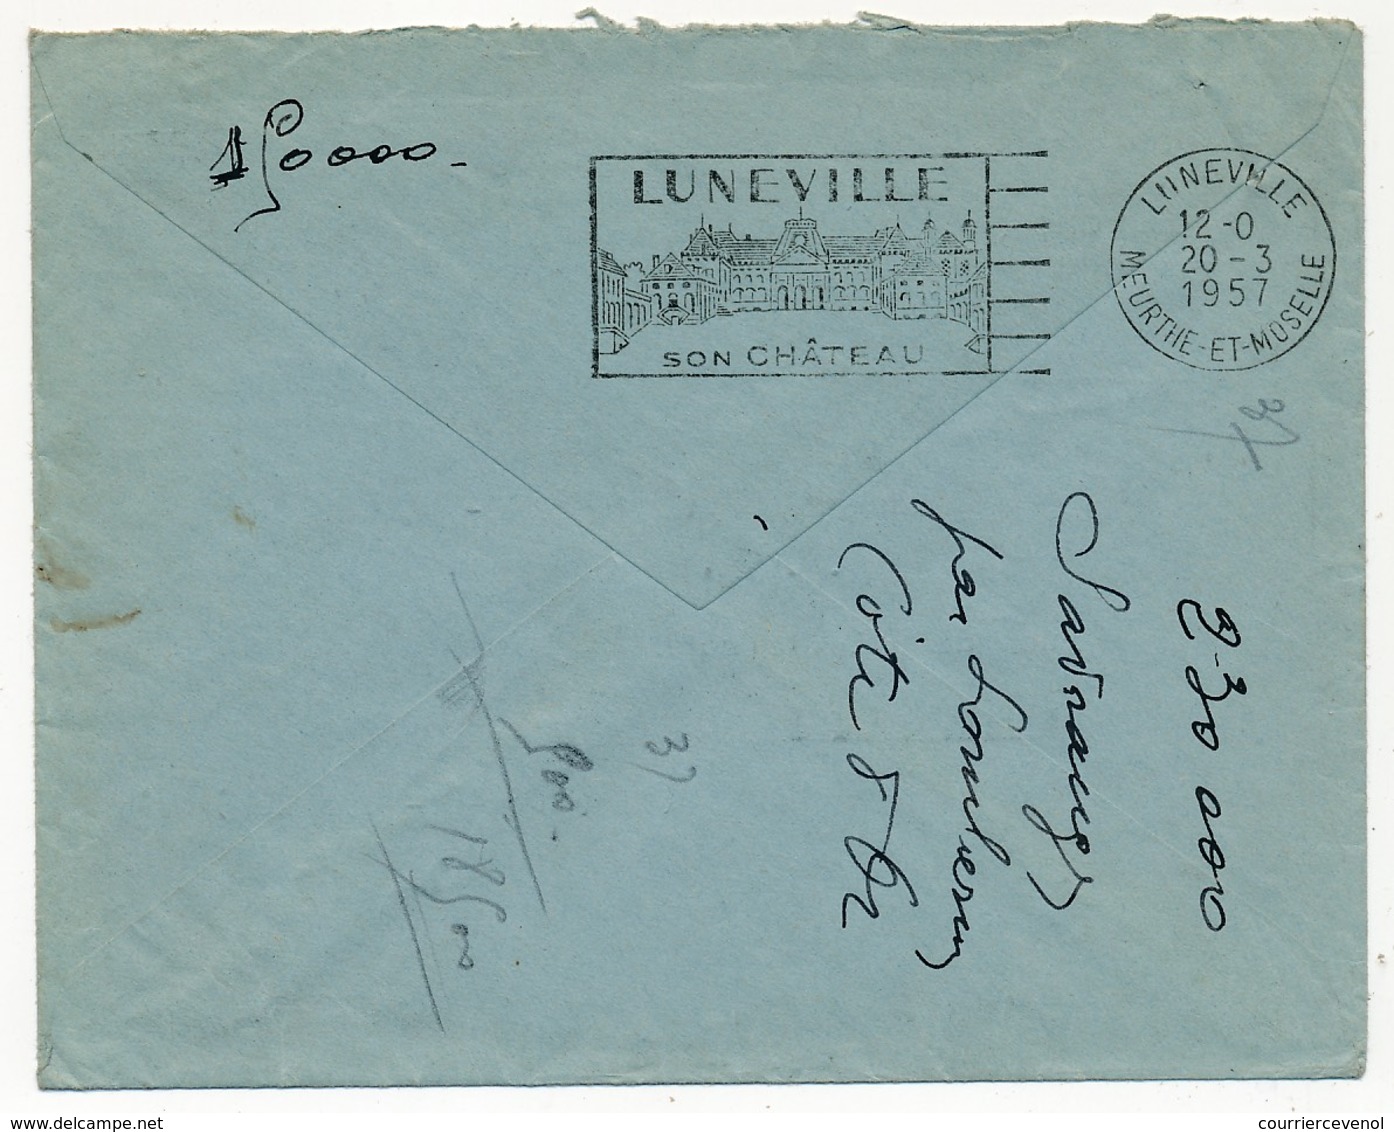 FRANCE - Enveloppe Depuis LAMARCHE (Vosges) 1957 - Cachet Numéroté "Retour à L'envoyeur 2125" (Lunéville - Meurthe Et M) - Handstempel